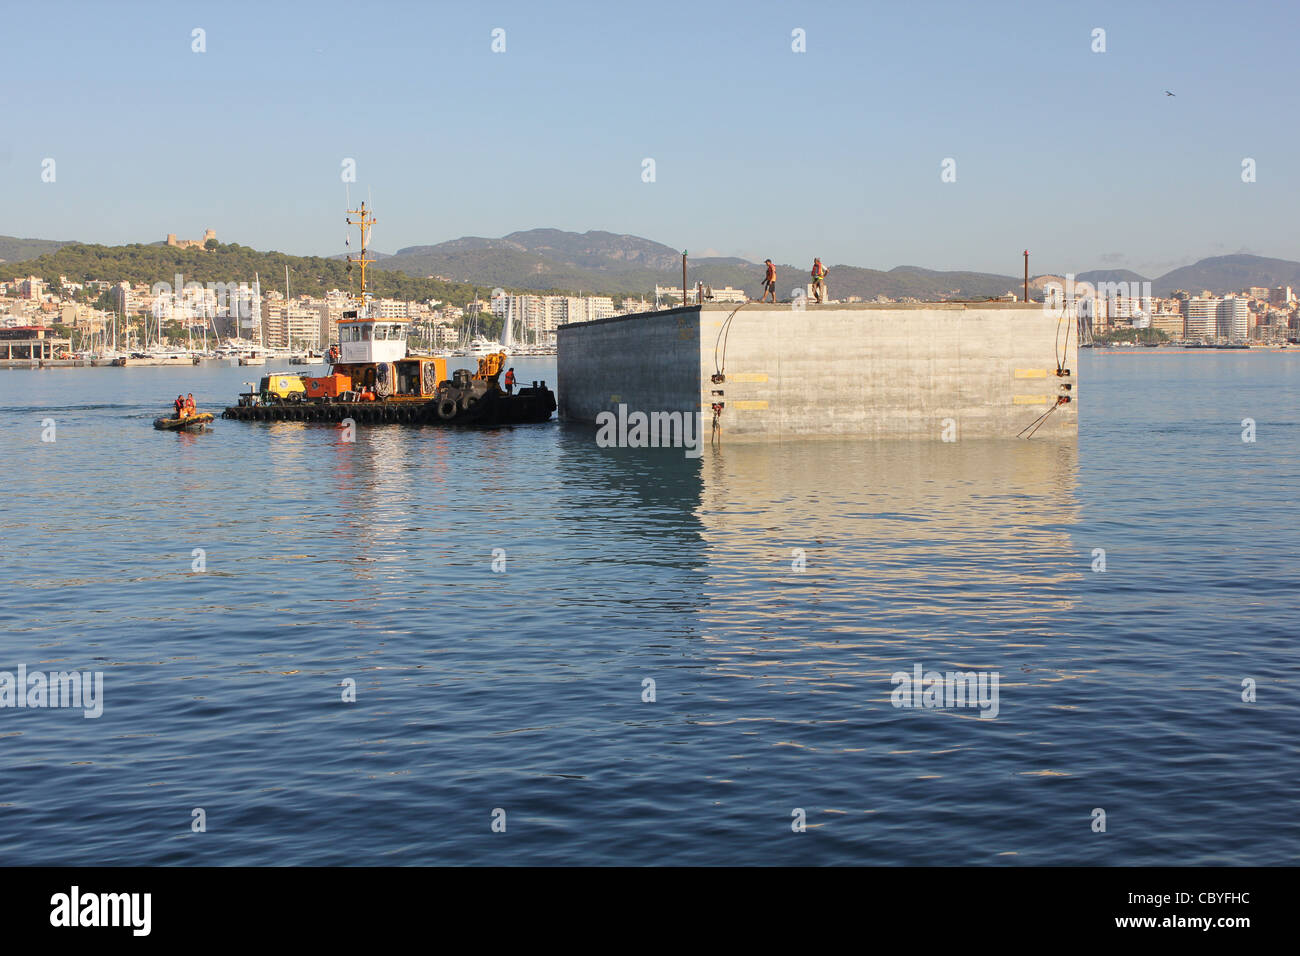 Gran bloque de hormigón ( destinados a obras de ampliación del puerto )  siendo manoevered temporal en el muelle, el puerto de Palma de Mallorca  Fotografía de stock - Alamy